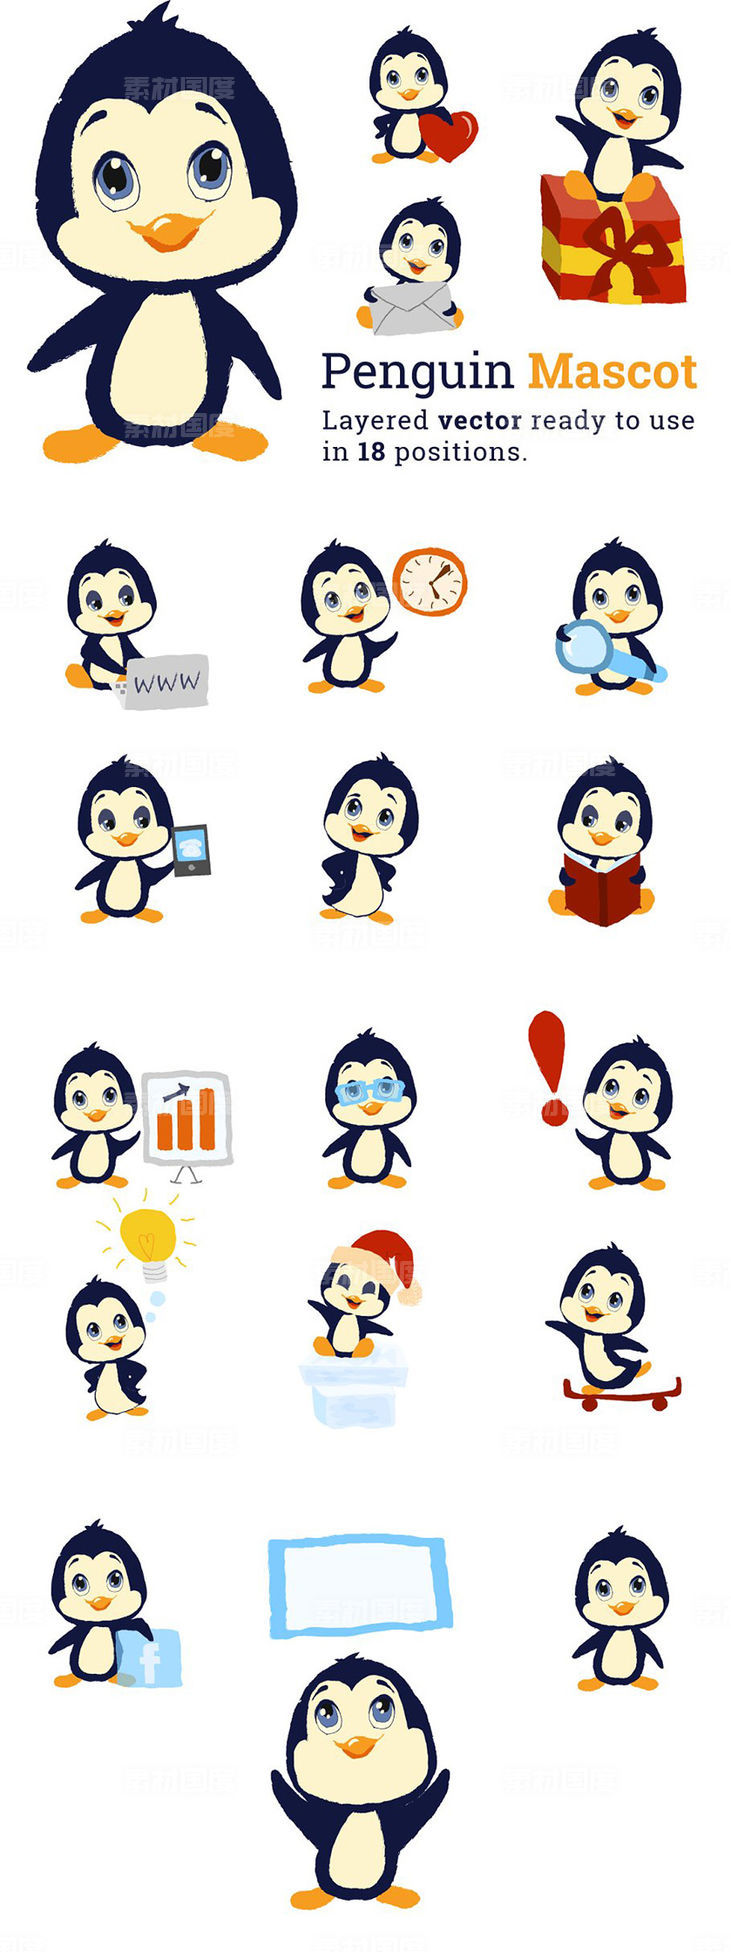 可爱企鹅吉祥物手绘插画设计 Penguin Mascot